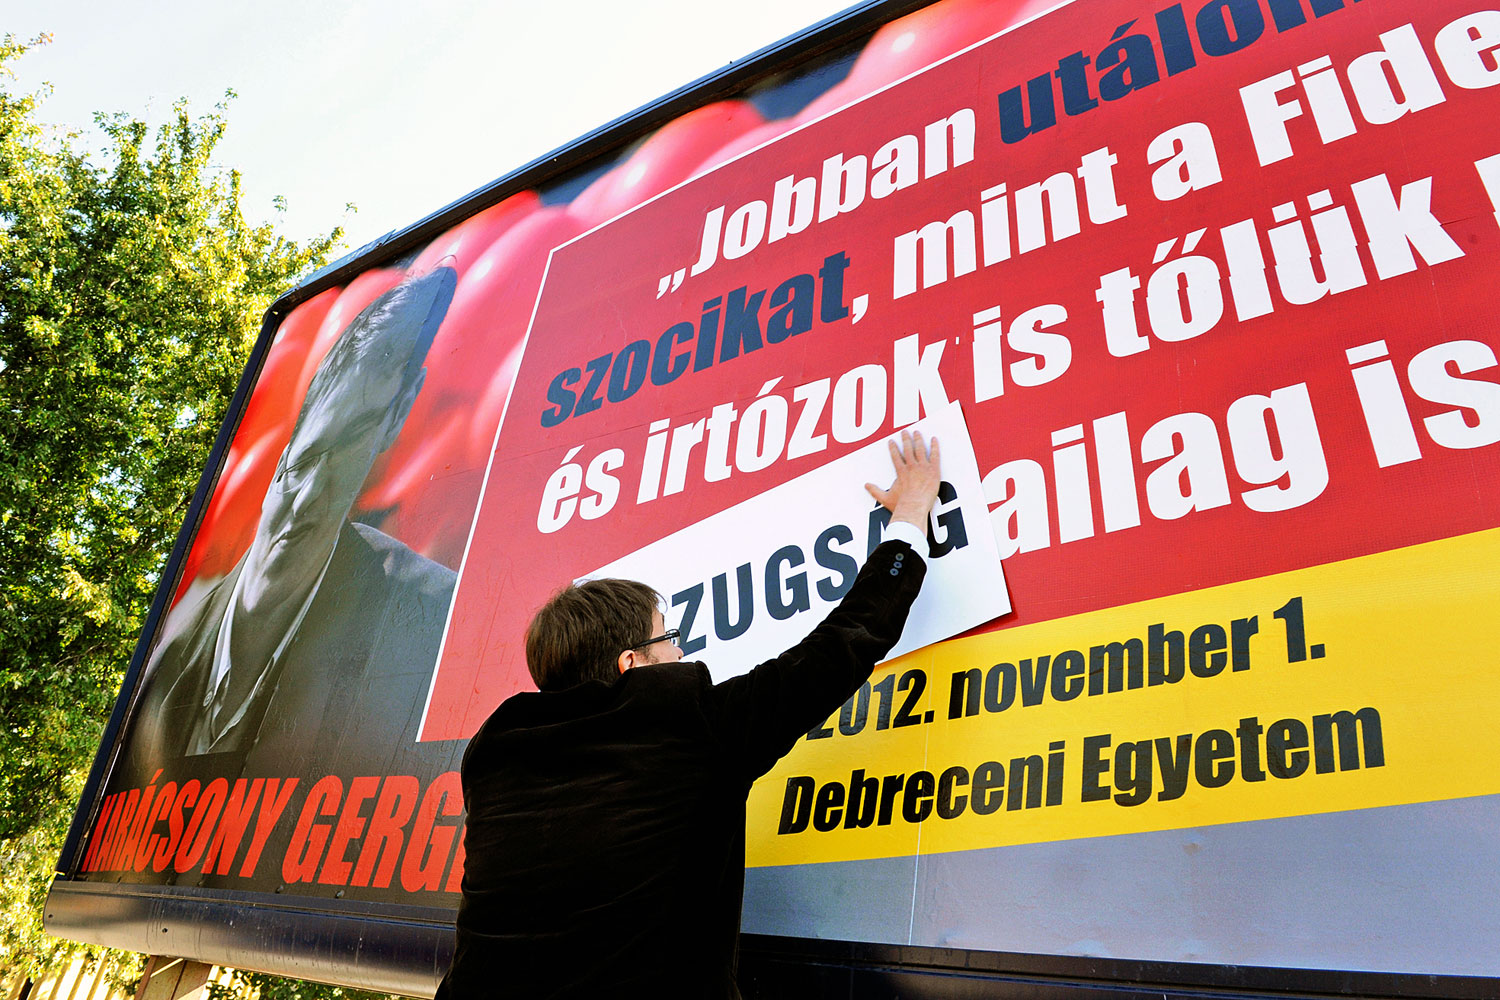 Karácsony Gergely átragasztotta a róla hazugságot állító plakátot Zuglóban